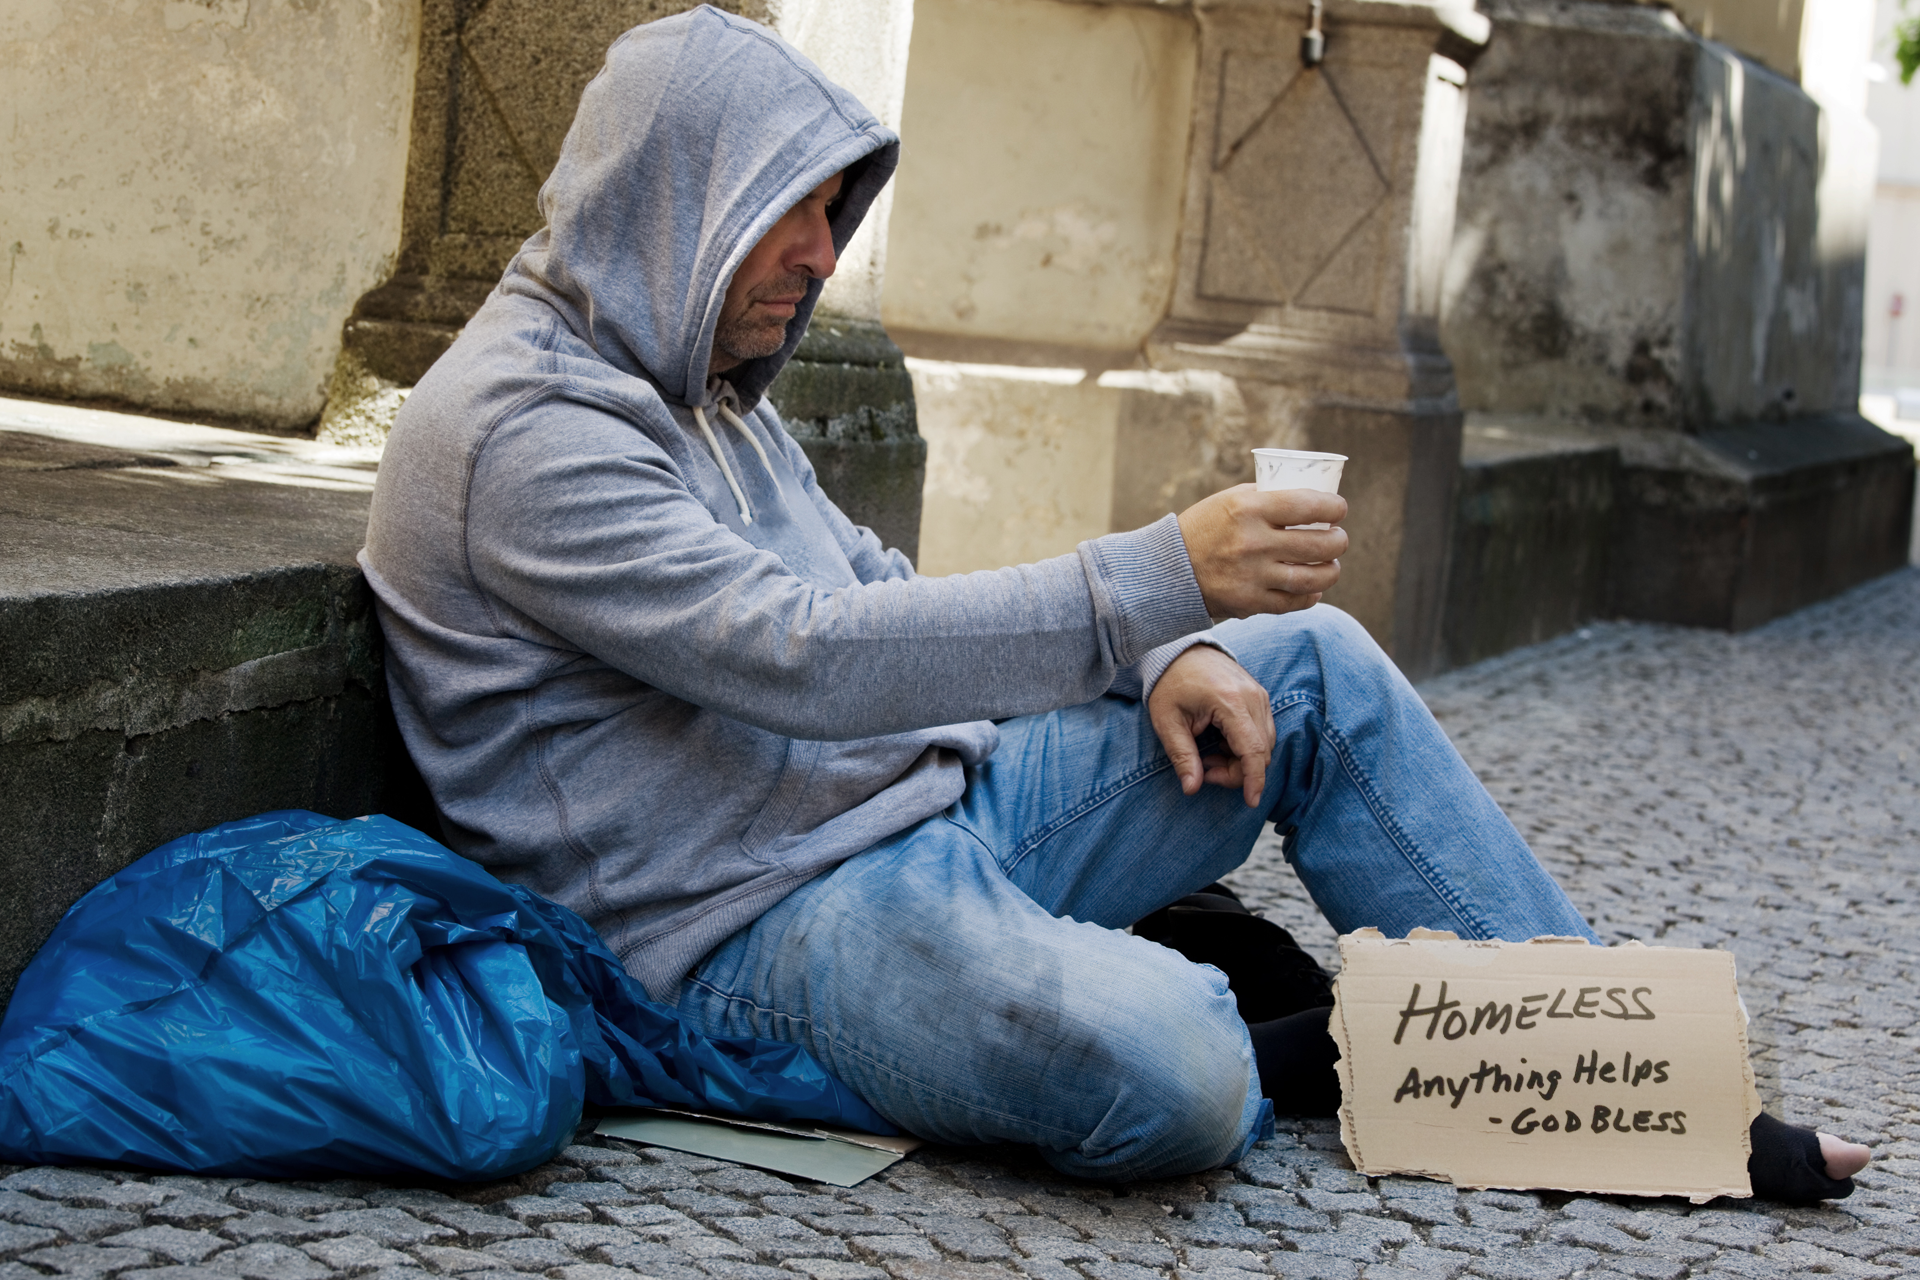 shelter the homeless